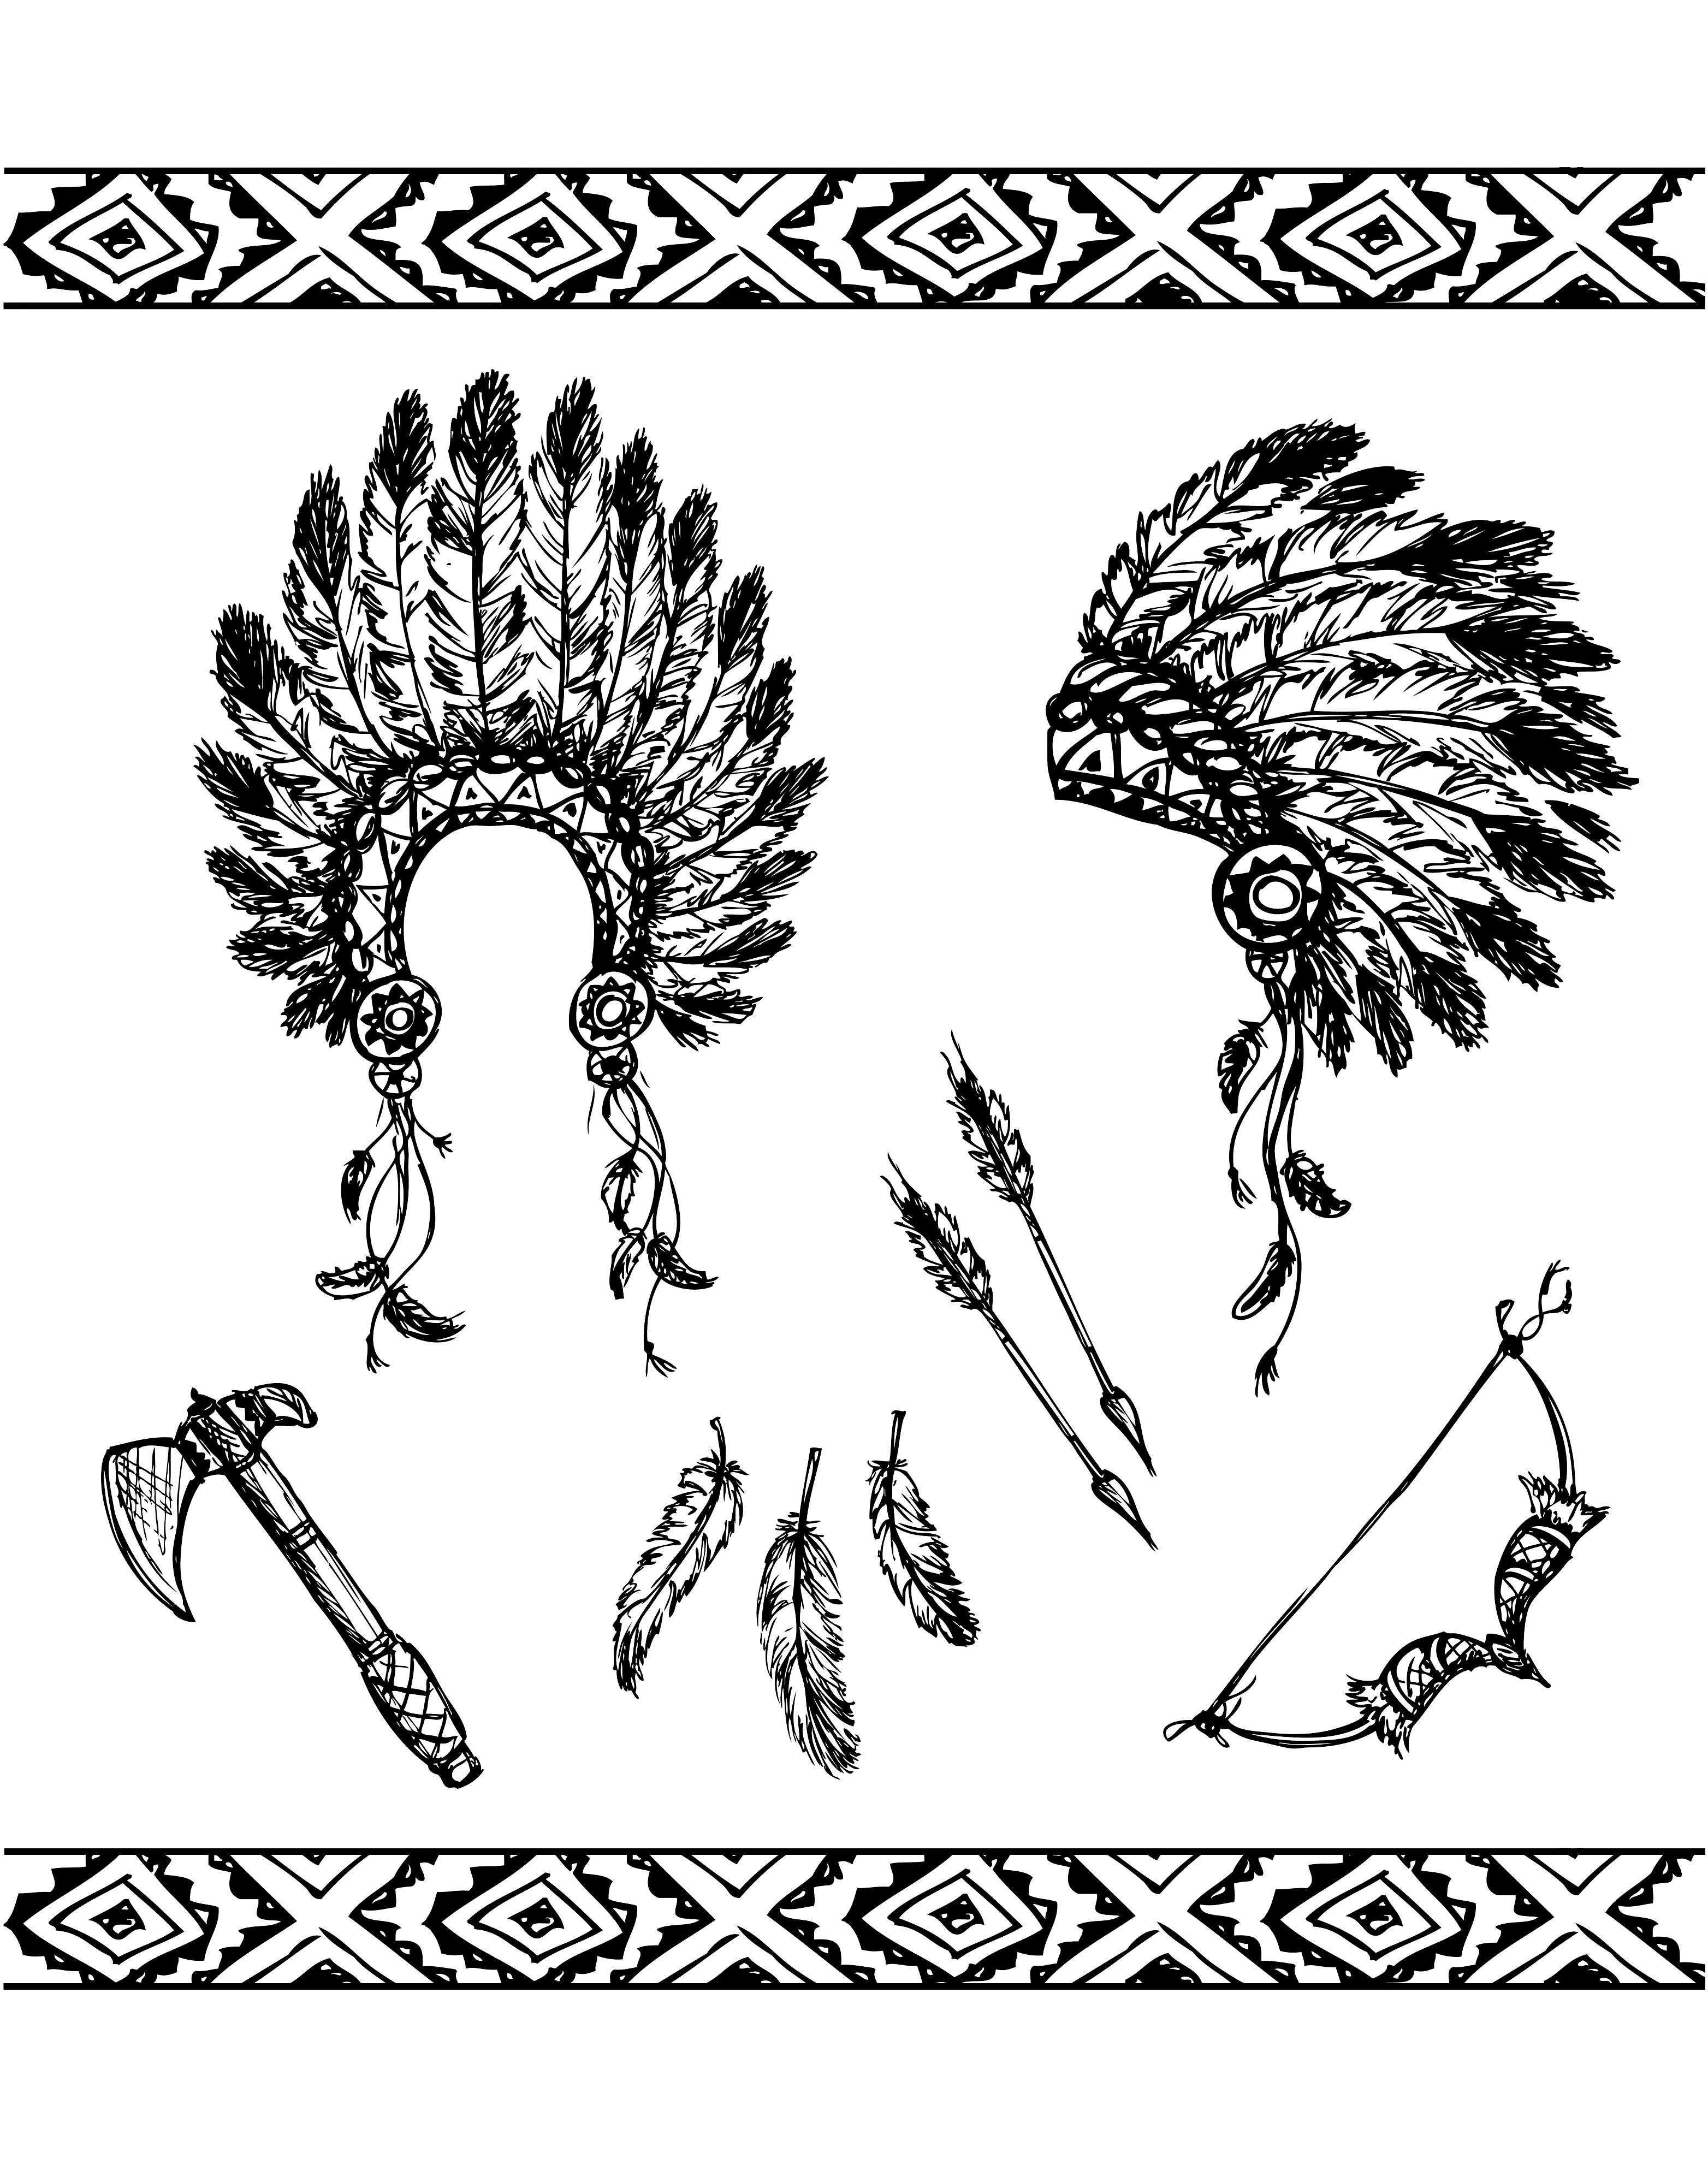 Les symboles des Indiens : la coiffe à plumes, la hache, l'archer et les flèches .., Artiste : Naum100   Source : 123rf